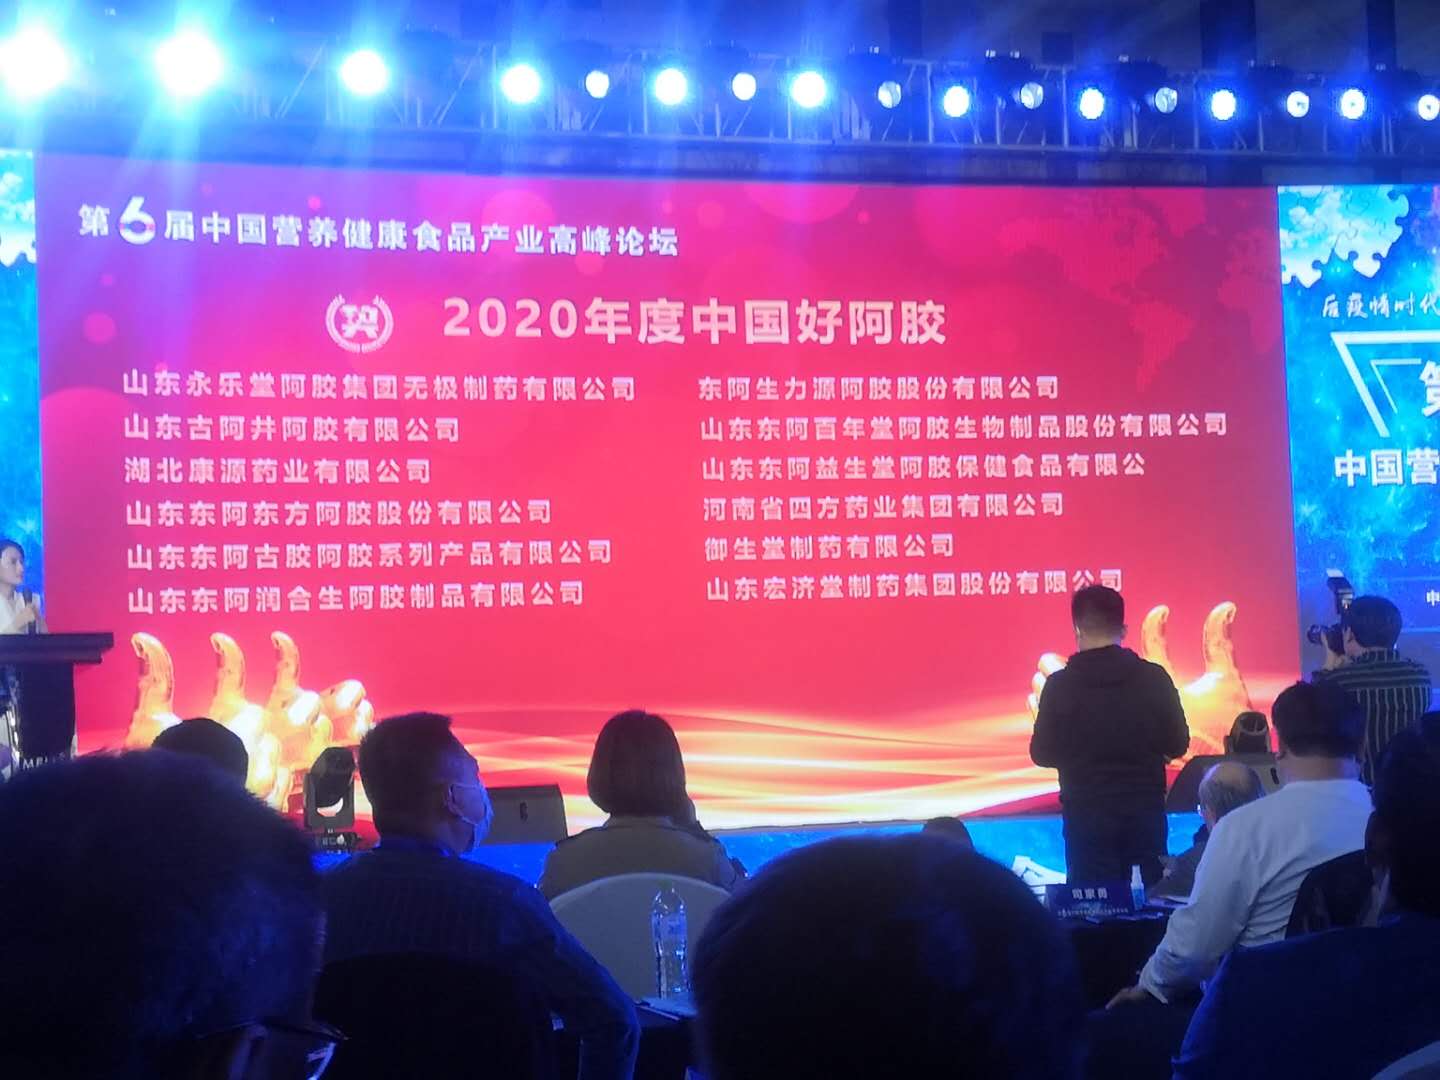 热烈祝贺湖北康源药业观音阁阿胶获“2020年度中国好阿胶”荣誉称号！